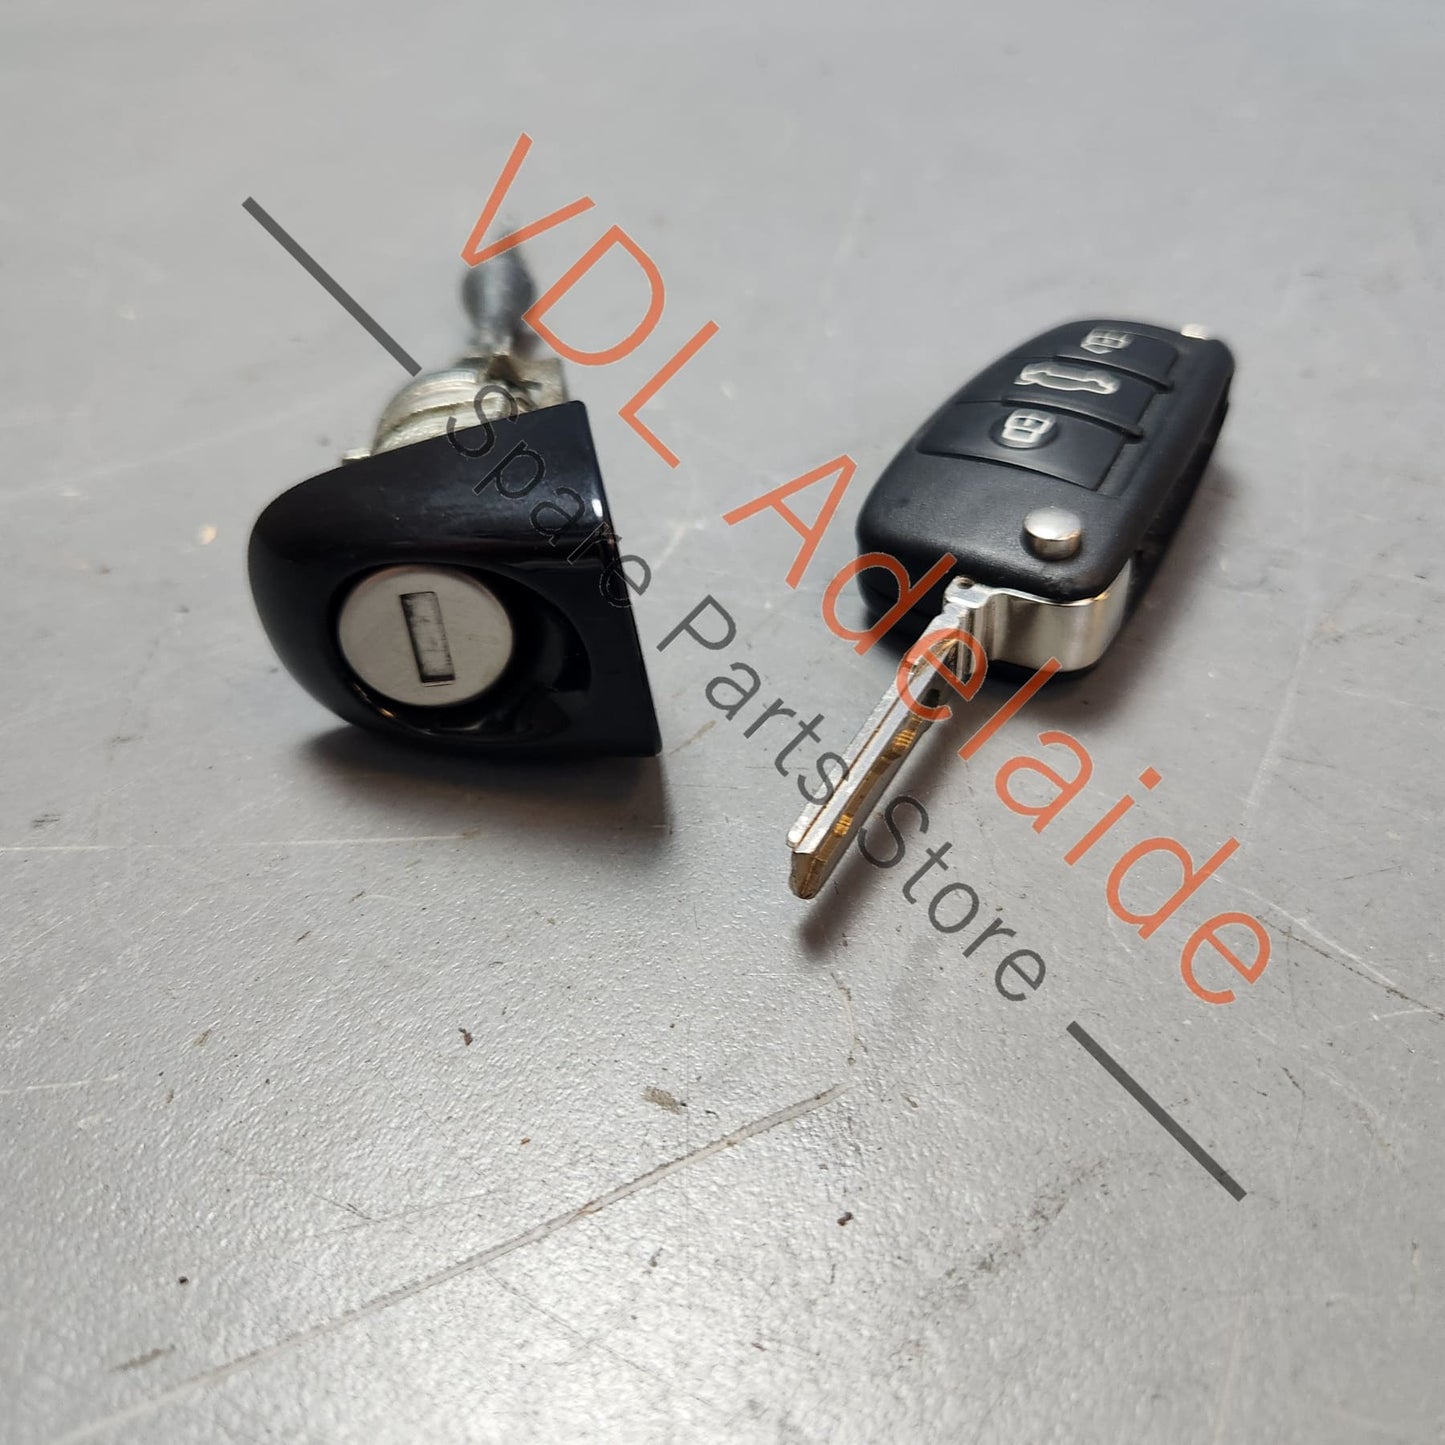 107837168BD    Audi Q7 Door Lock Cap & Door Lock Barrel Cylinder with Matching Blade Key 107837168BD